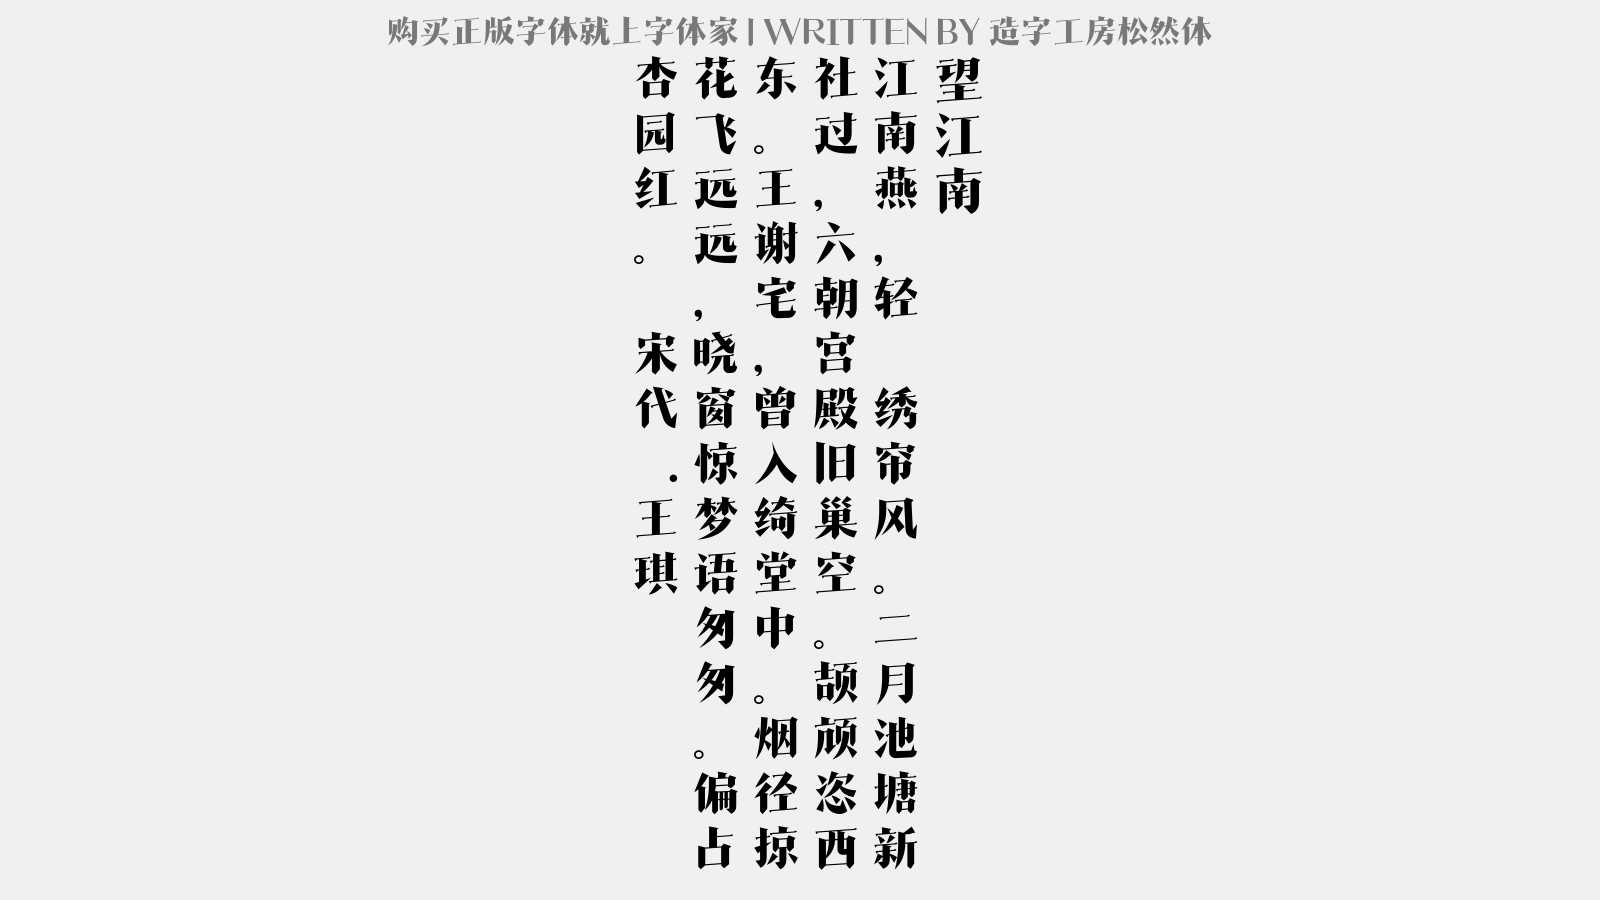 造字工房松然体免费字体下载 中文字体免费下载尽在字体家